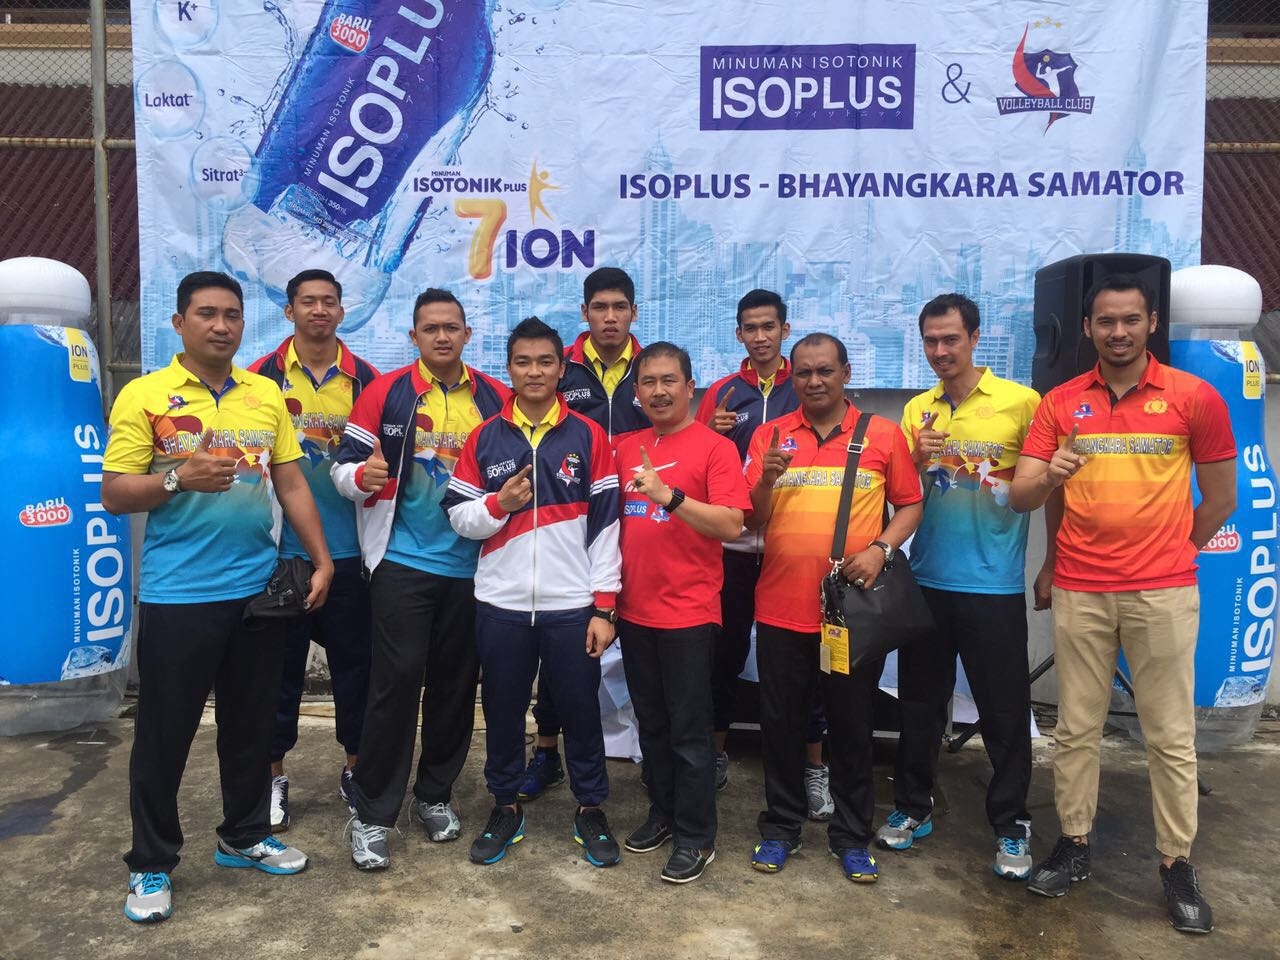 Surabaya Bhayangkara Samator bersama ISOPLUS Beri Coaching Clinic di Malang